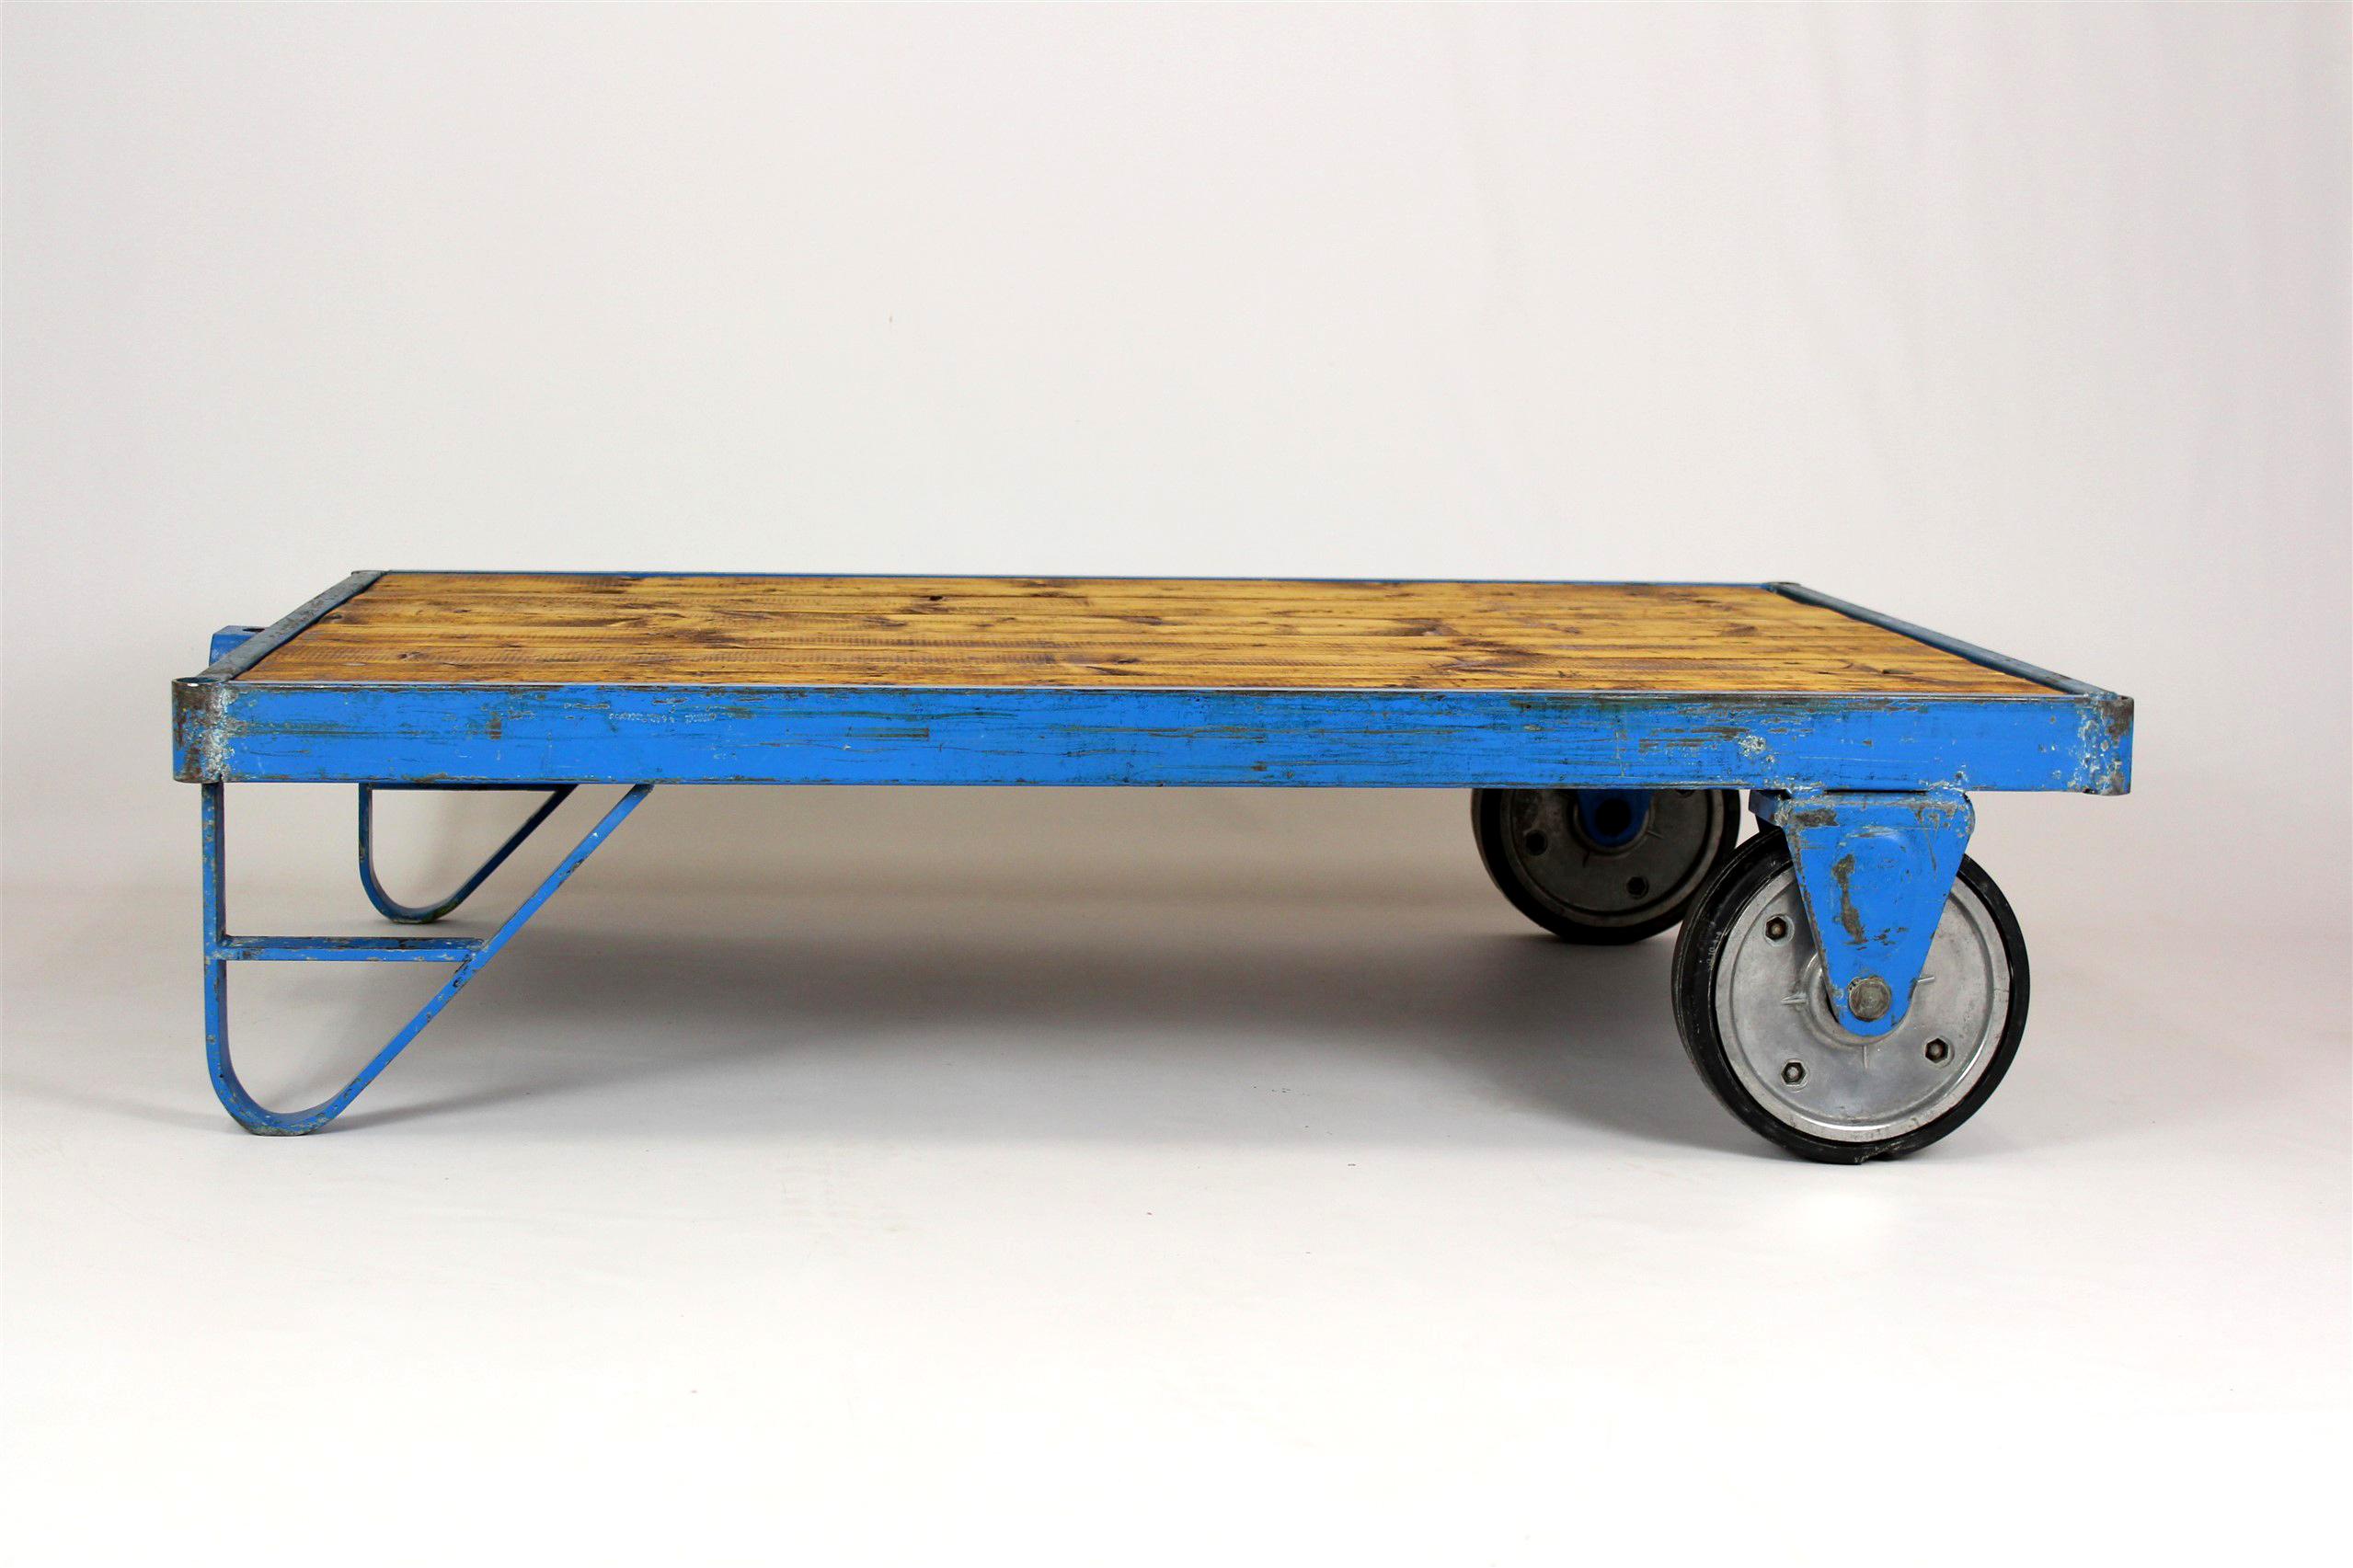 
Ce chariot industriel en palette datant des années 1950/1960 sert aujourd'hui de table basse élégante. La table a été partiellement rénovée - les planches en bois ont été protégées avec de l'huile pour comptoir. La structure métallique a été